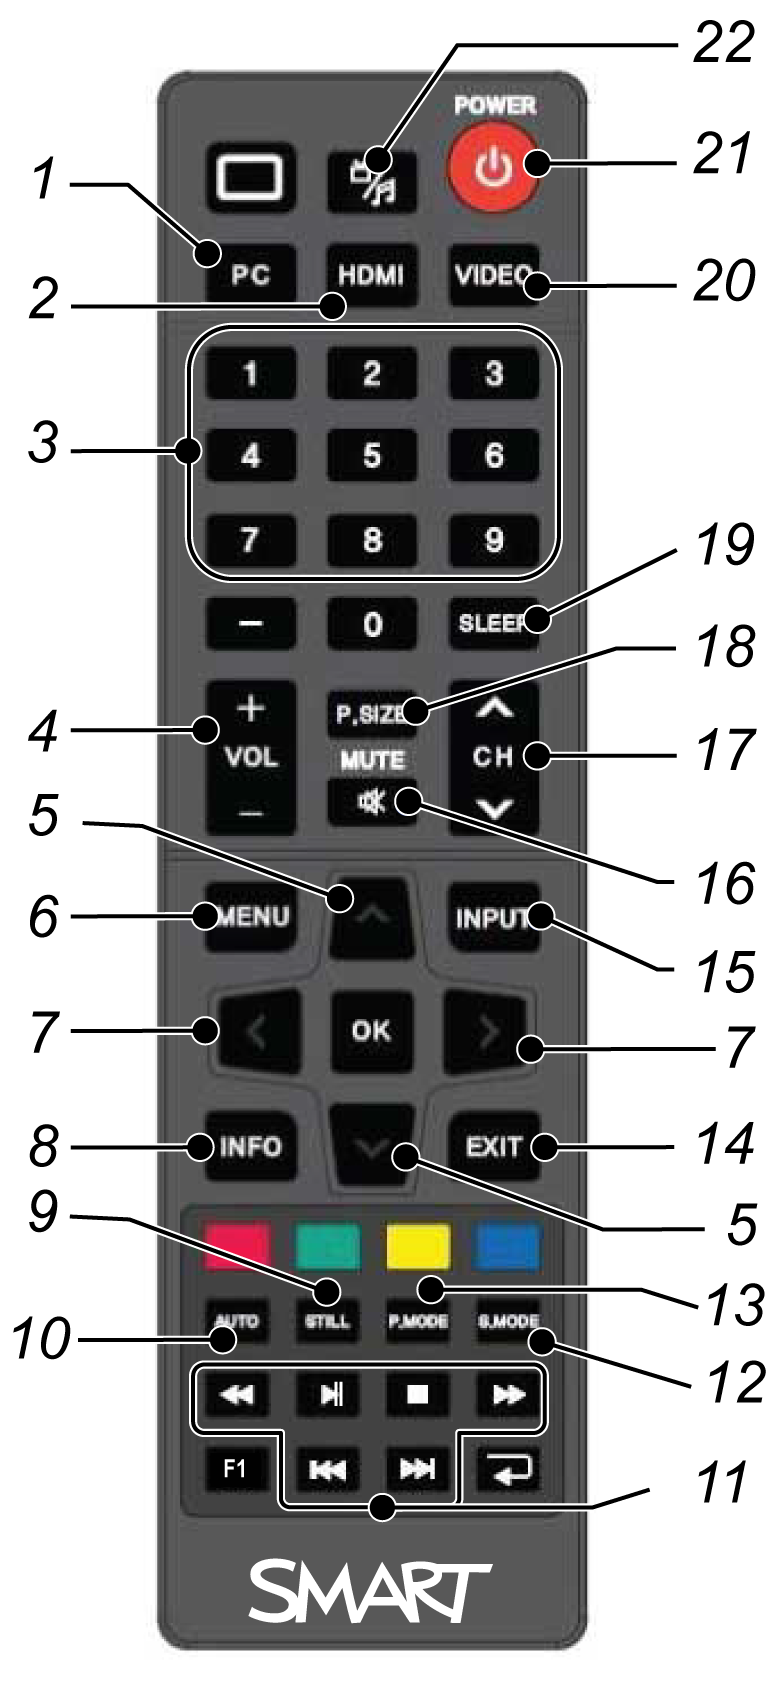 L U K U 3 Interaktiivisen laajakuvanäytön käyttö Nro Painike Tiedot 1 PC Valitsee VGA-tulon 2 HDMI Valitsee HDMI-tulon 3 [Numeropainikkeet] Vaihda kanavia painamalla numeronäppäimistön painikkeita 4